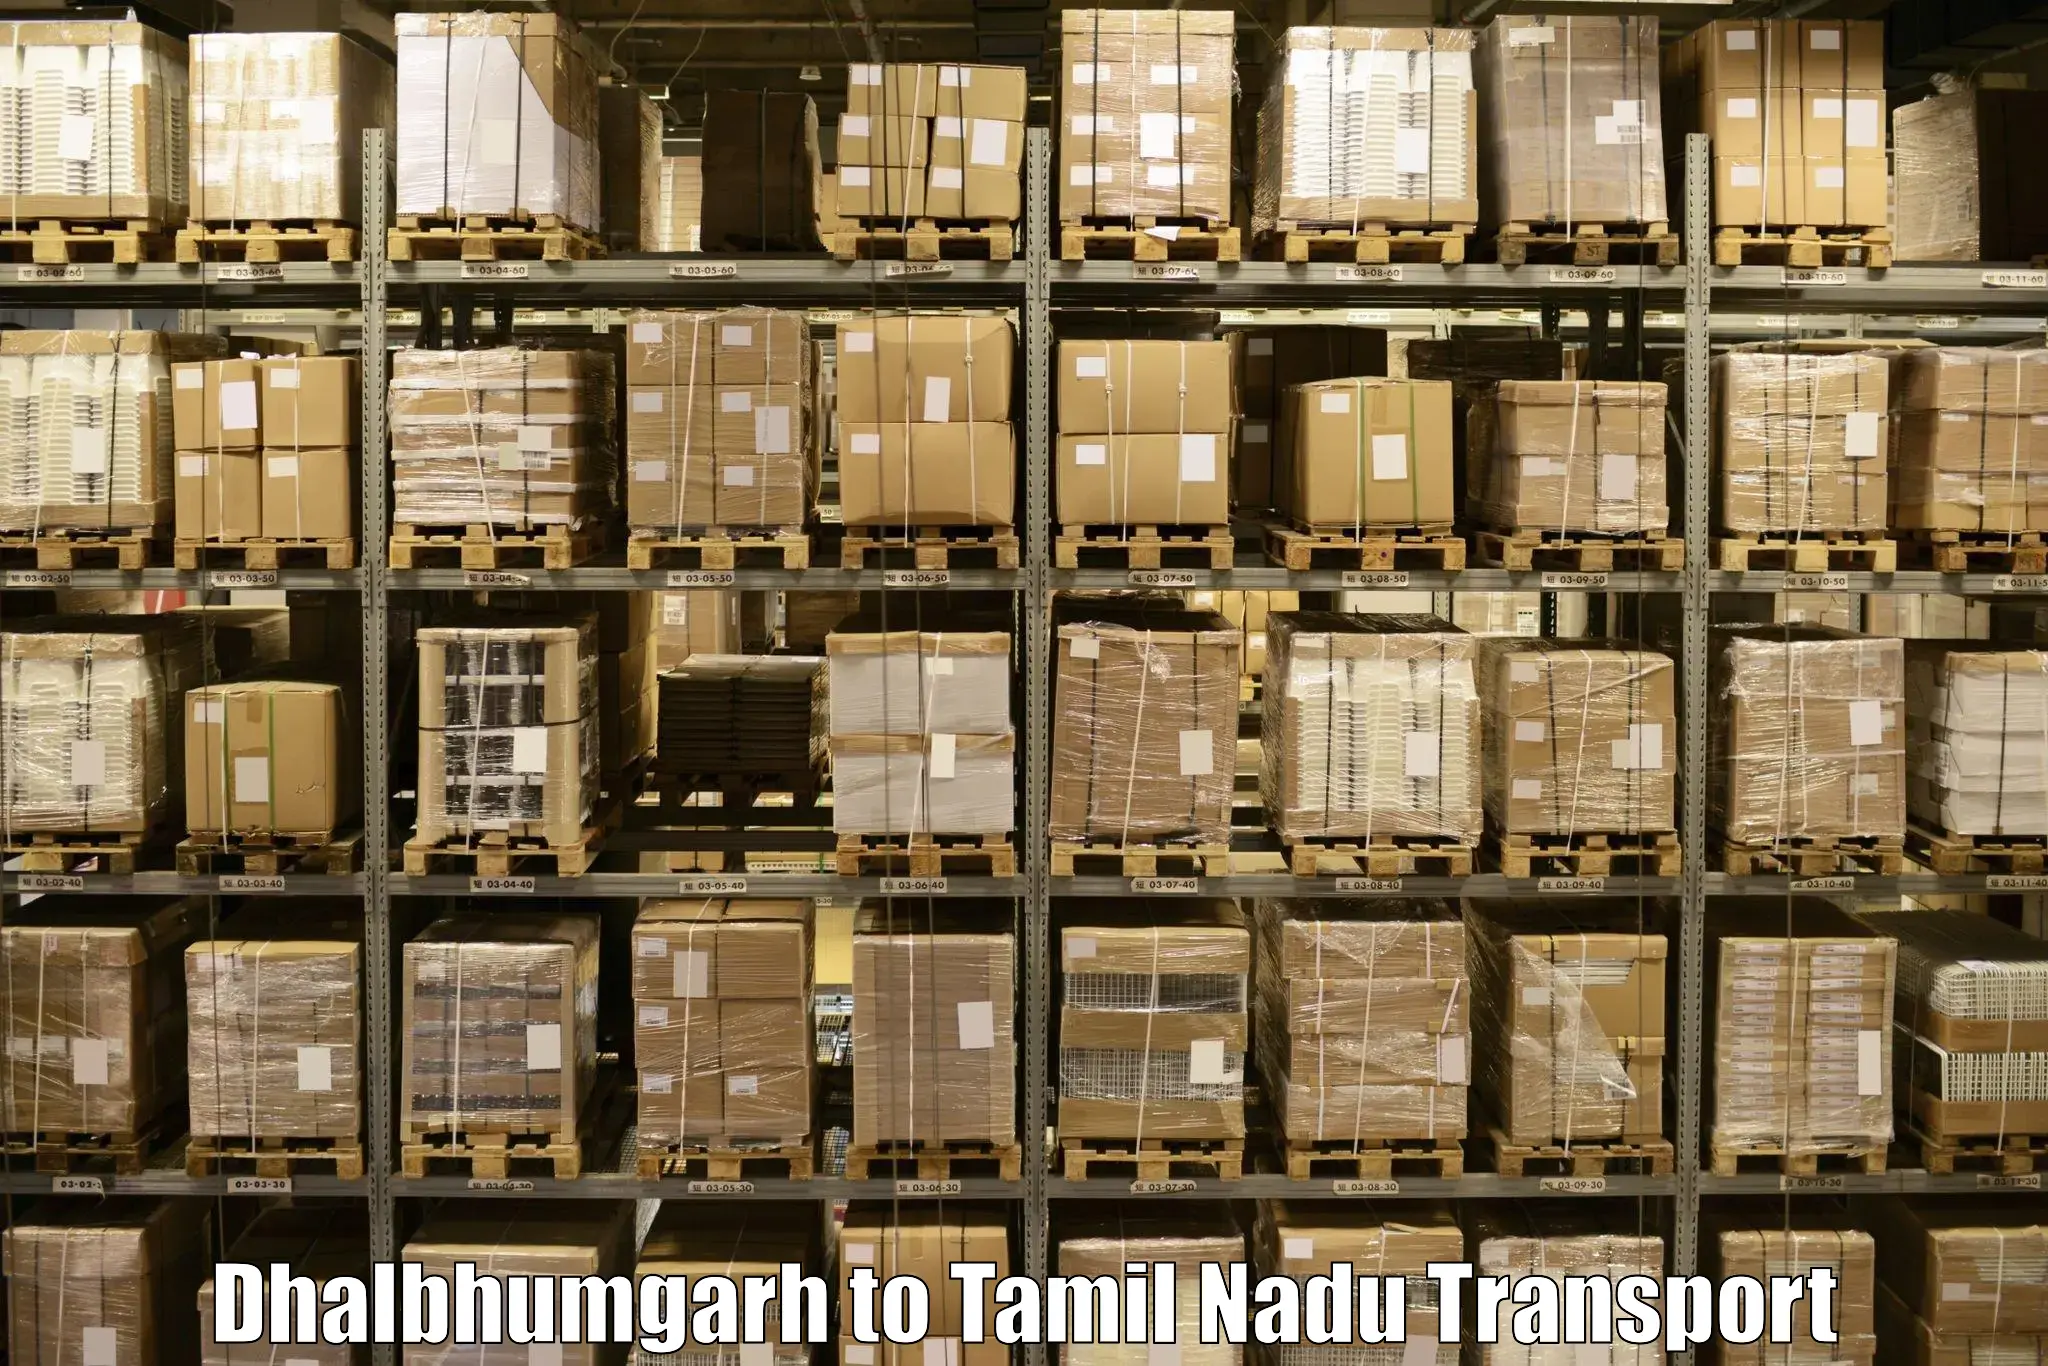 Cargo transport services Dhalbhumgarh to Kumbakonam